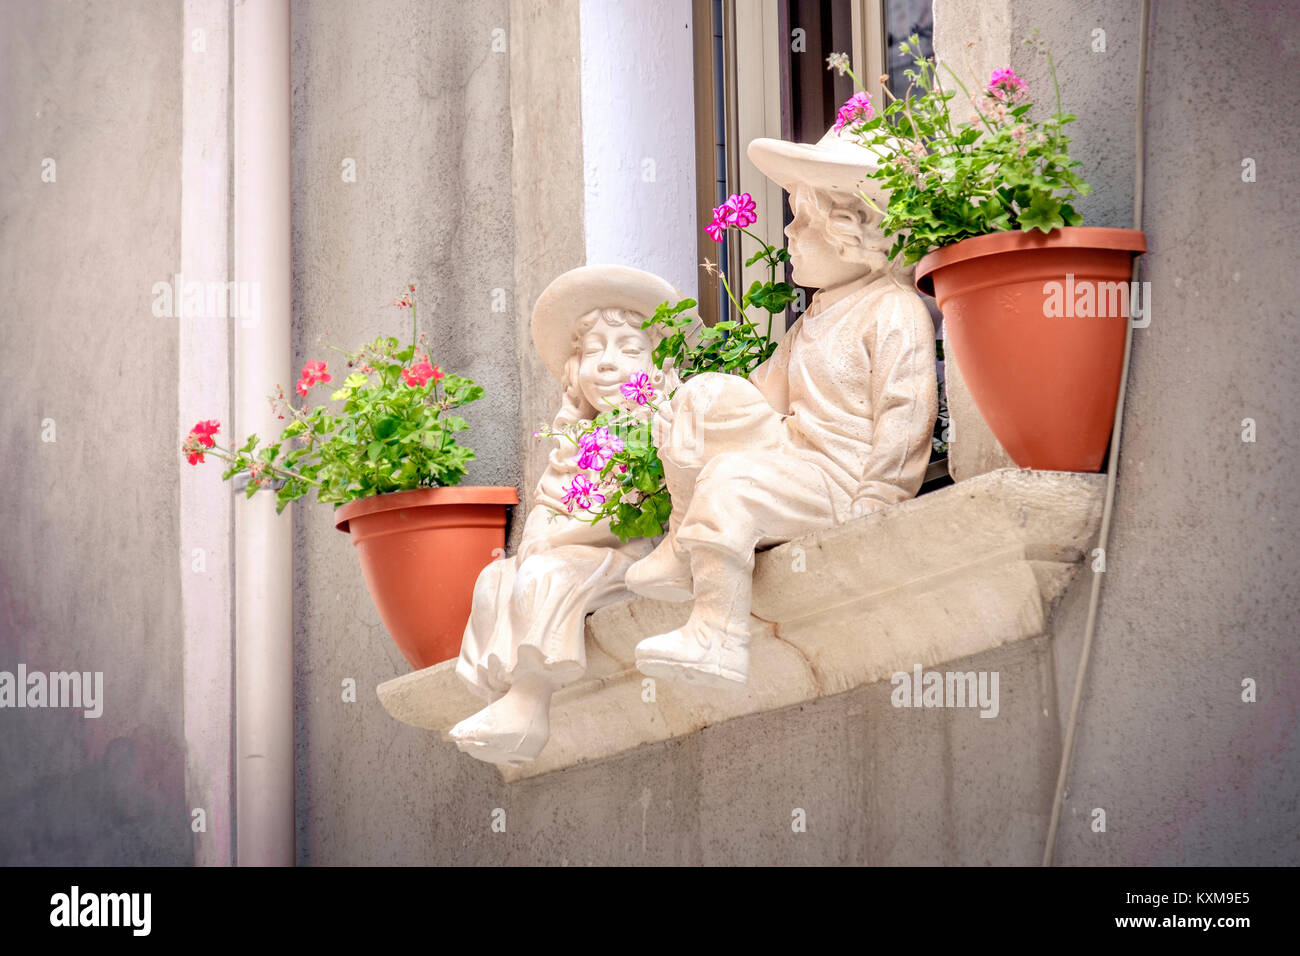 Fensterbänke Statuen Kinder Hintergrund Blumentöpfe balkon Fensterbank Stockfoto